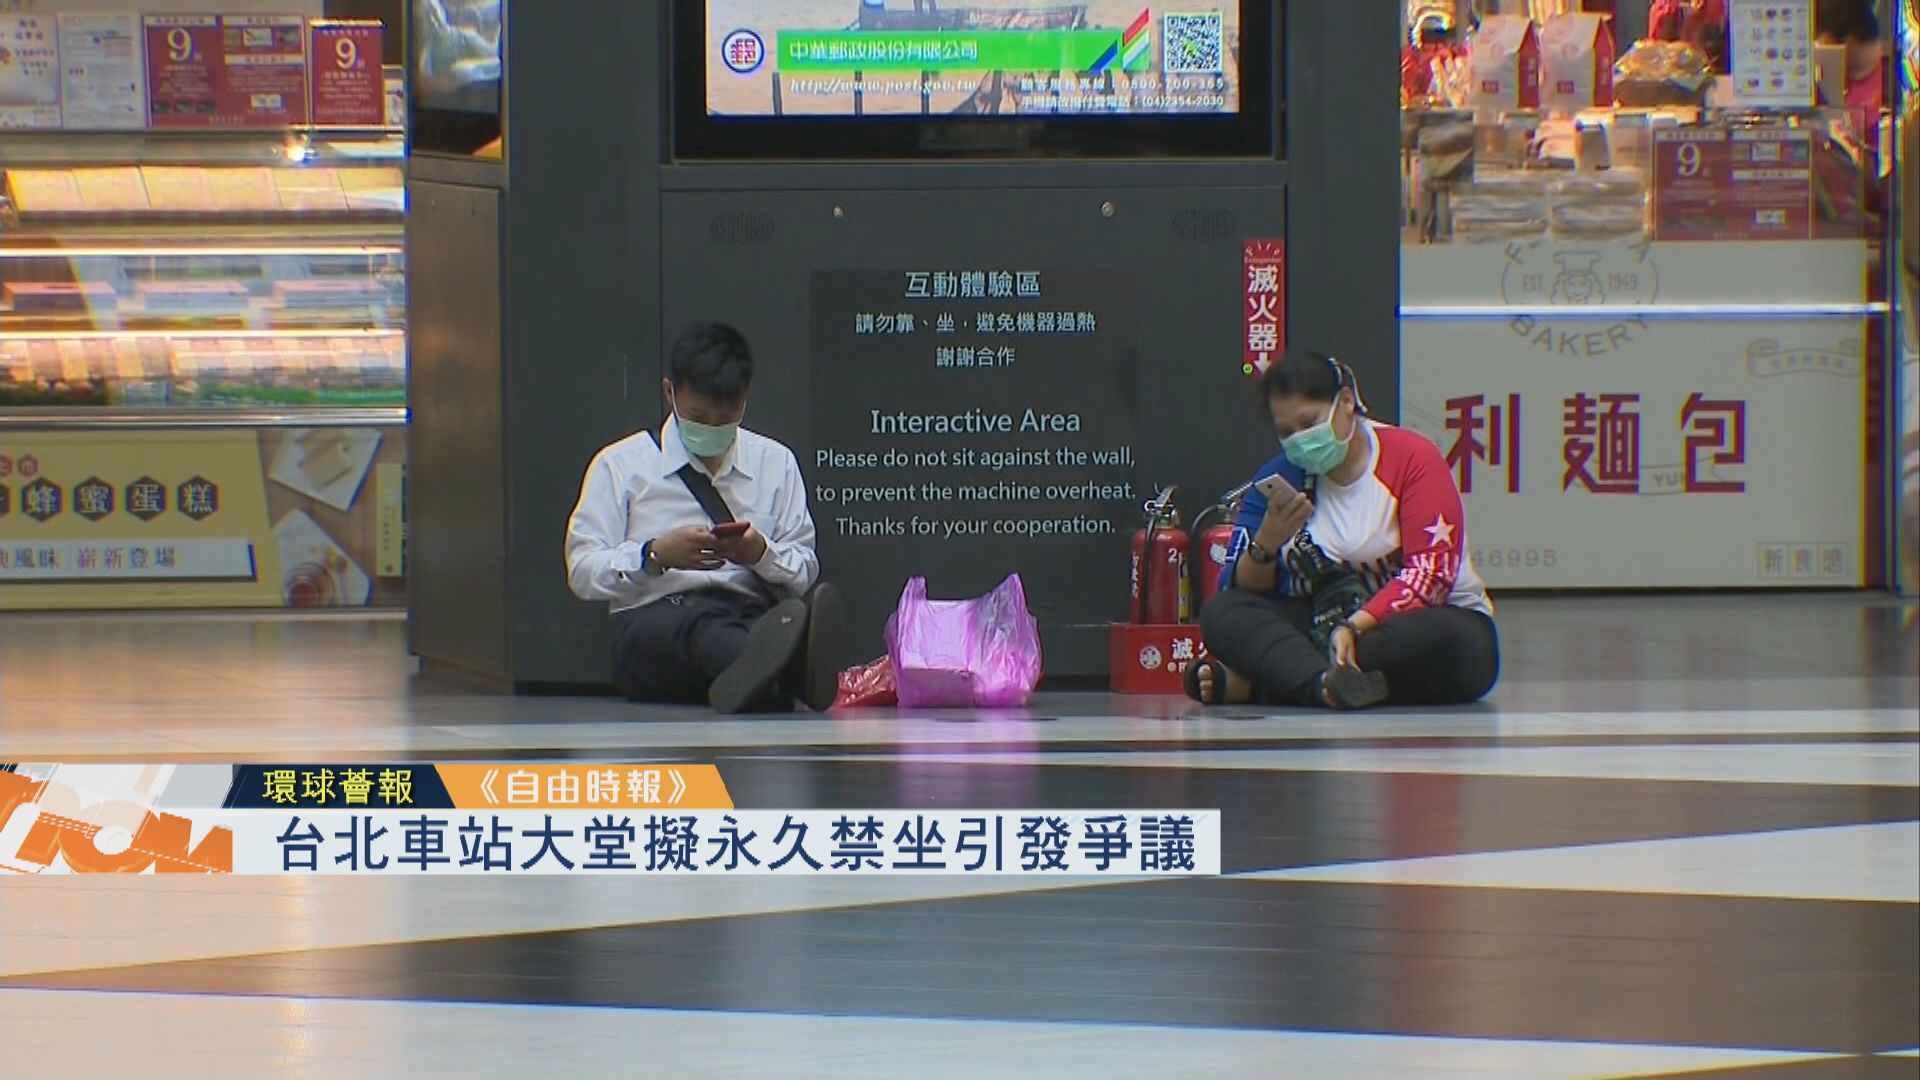 【環球薈報】台北車站大堂擬永久禁坐引發爭議